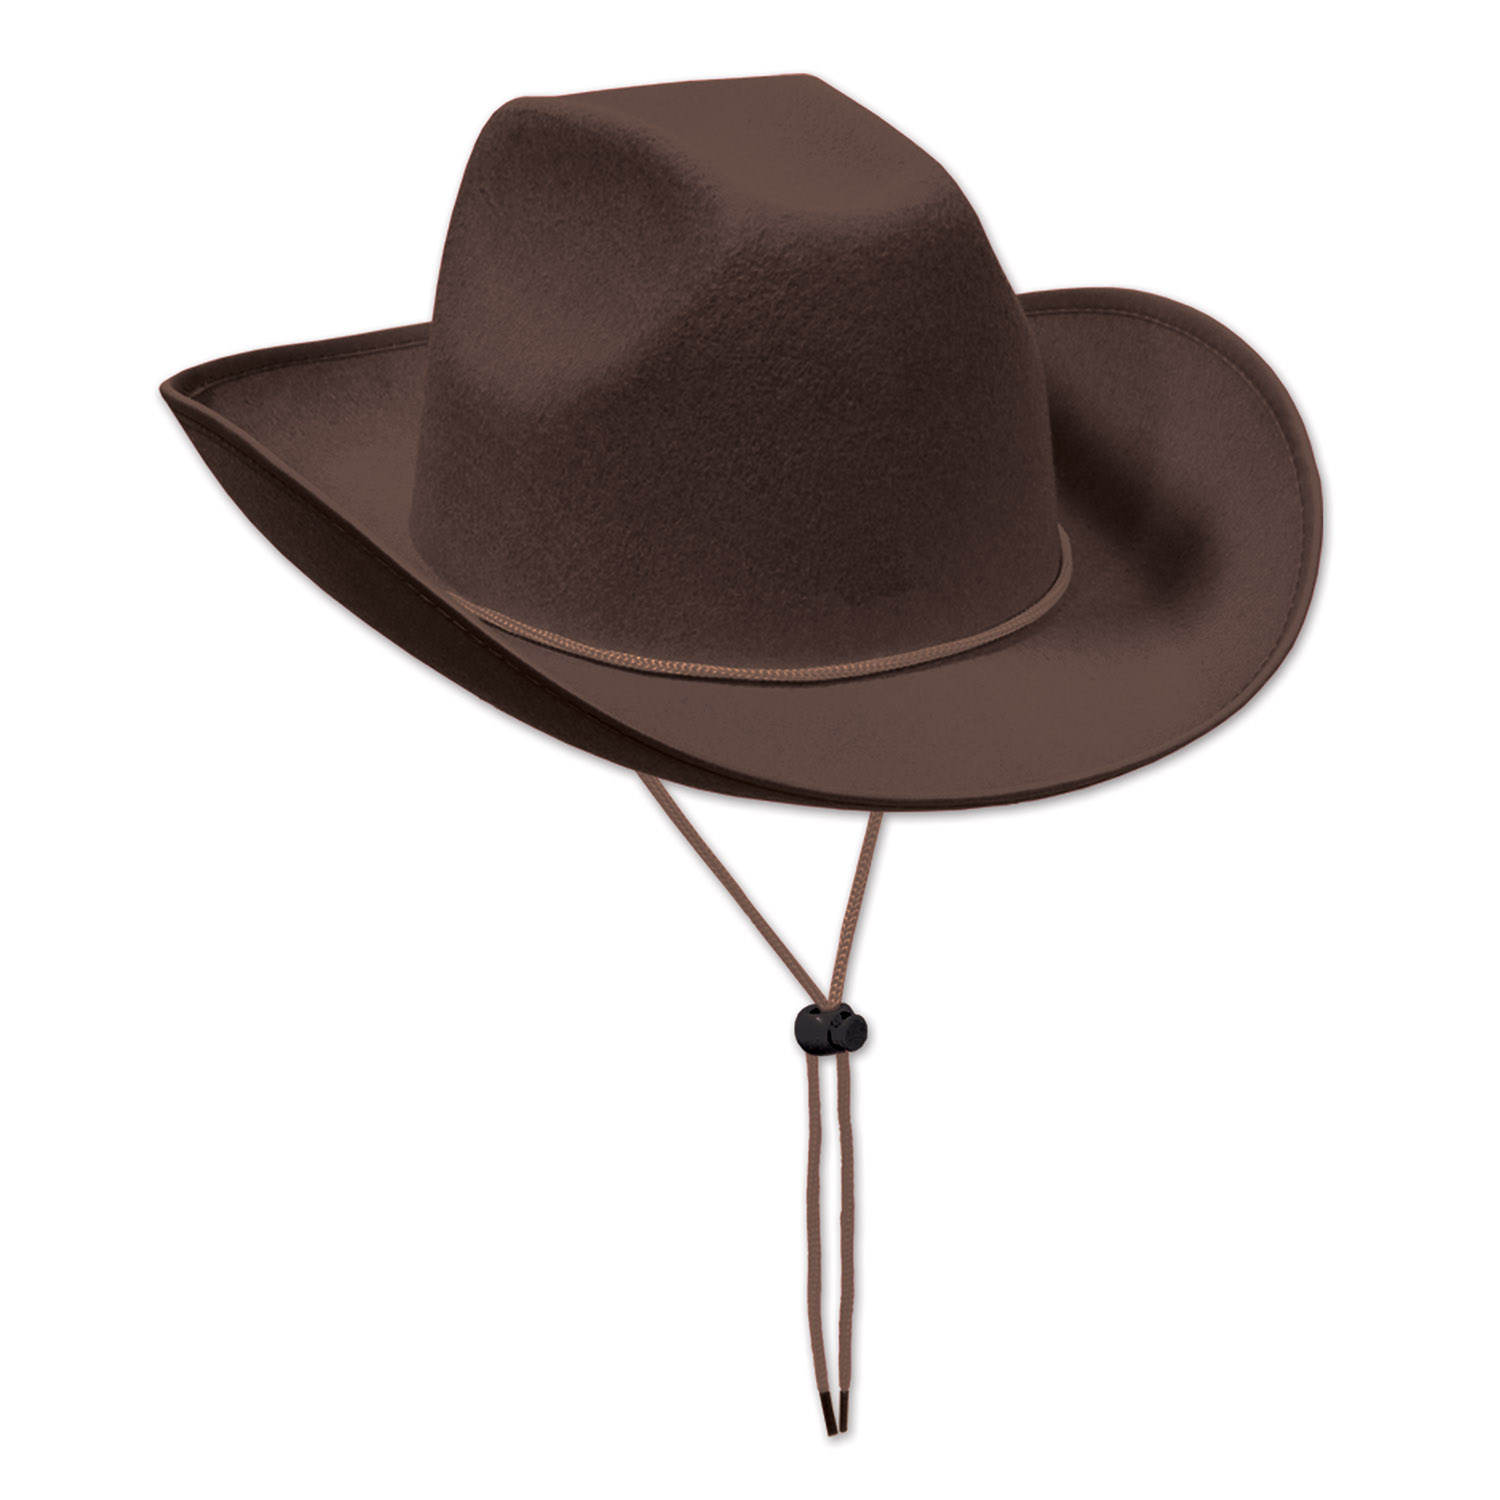 Brown felt western cowboy hat with drawstring. 